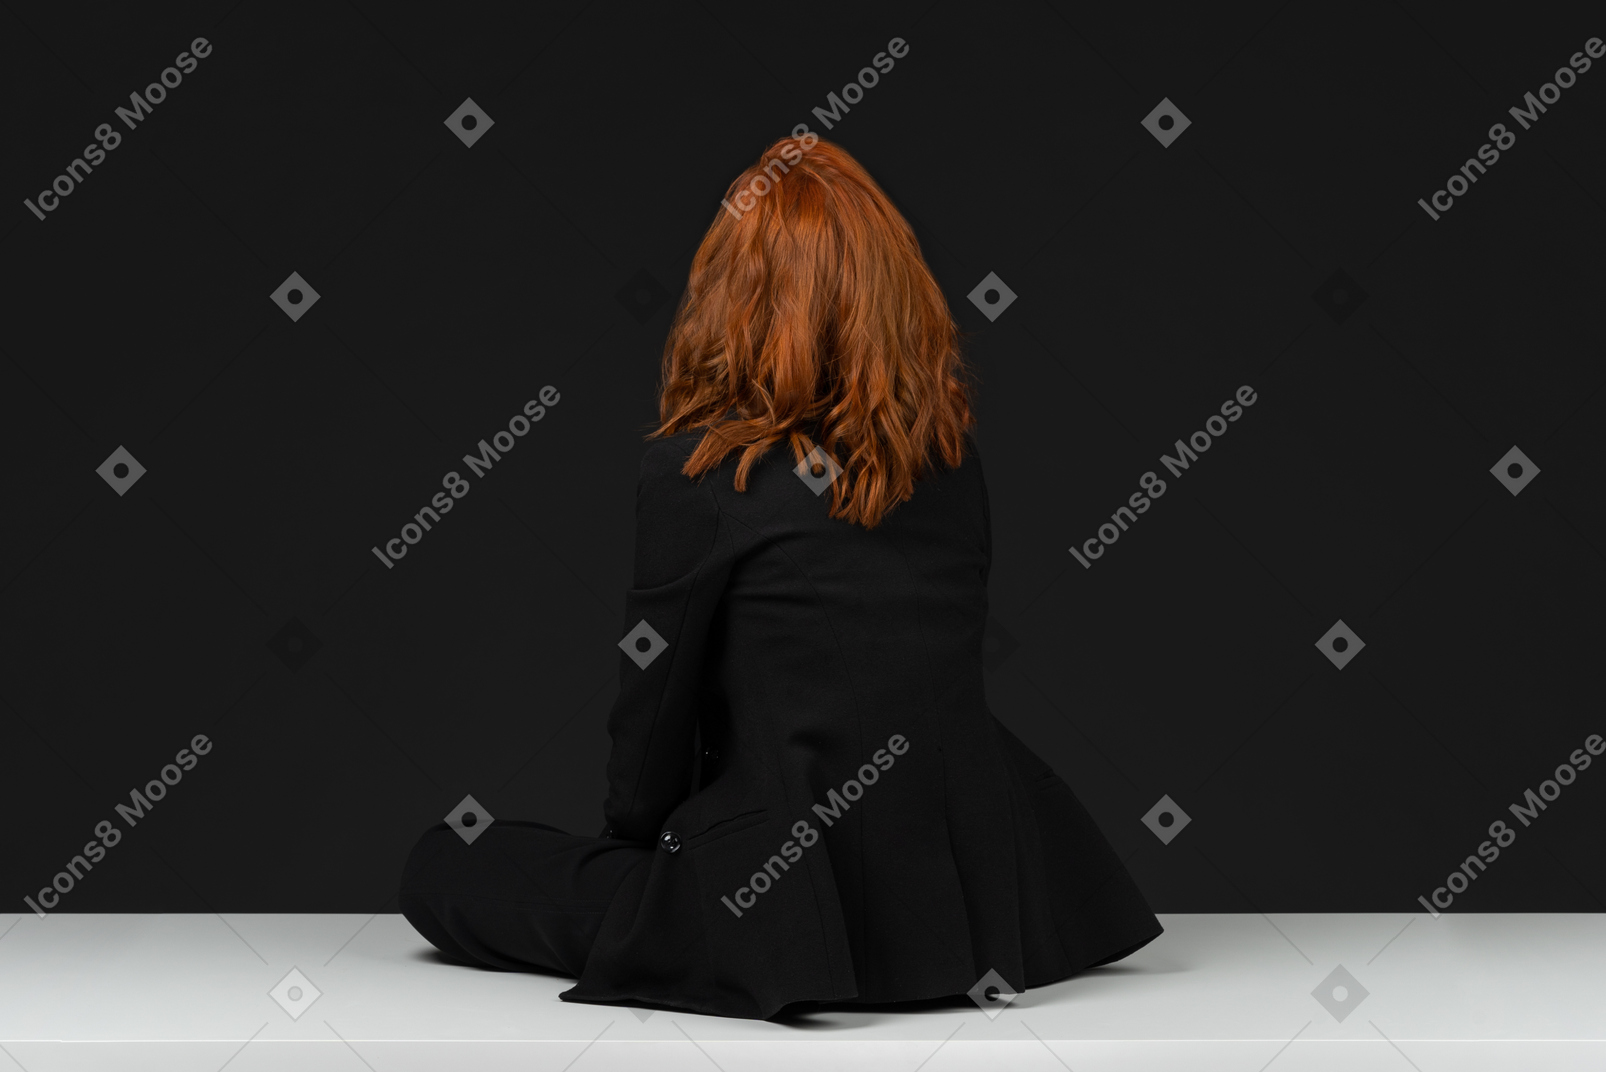 흰색 테이블에 앉아 귀여운 빨간 머리 여자의 뒷면보기